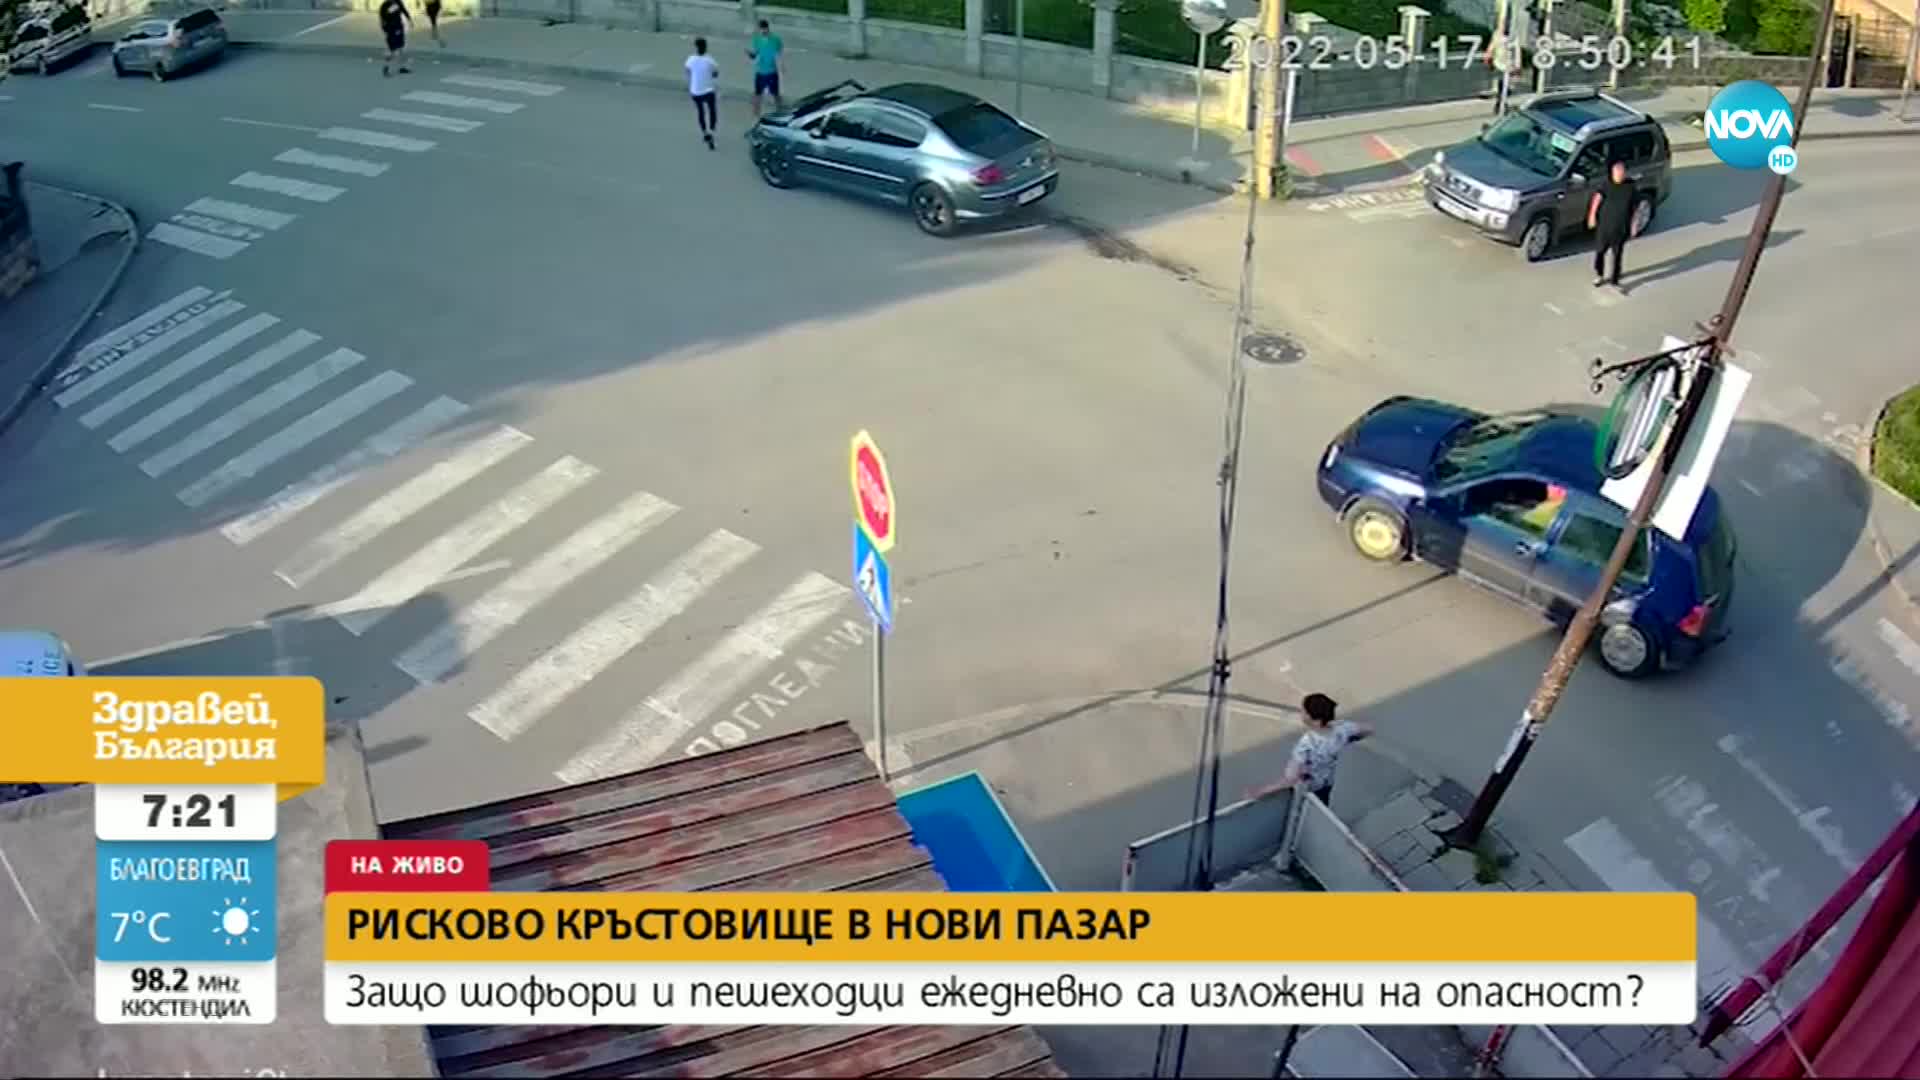 Рисково кръстовище в Нови пазар: Шофьори и пешеходци са изложени на опасност